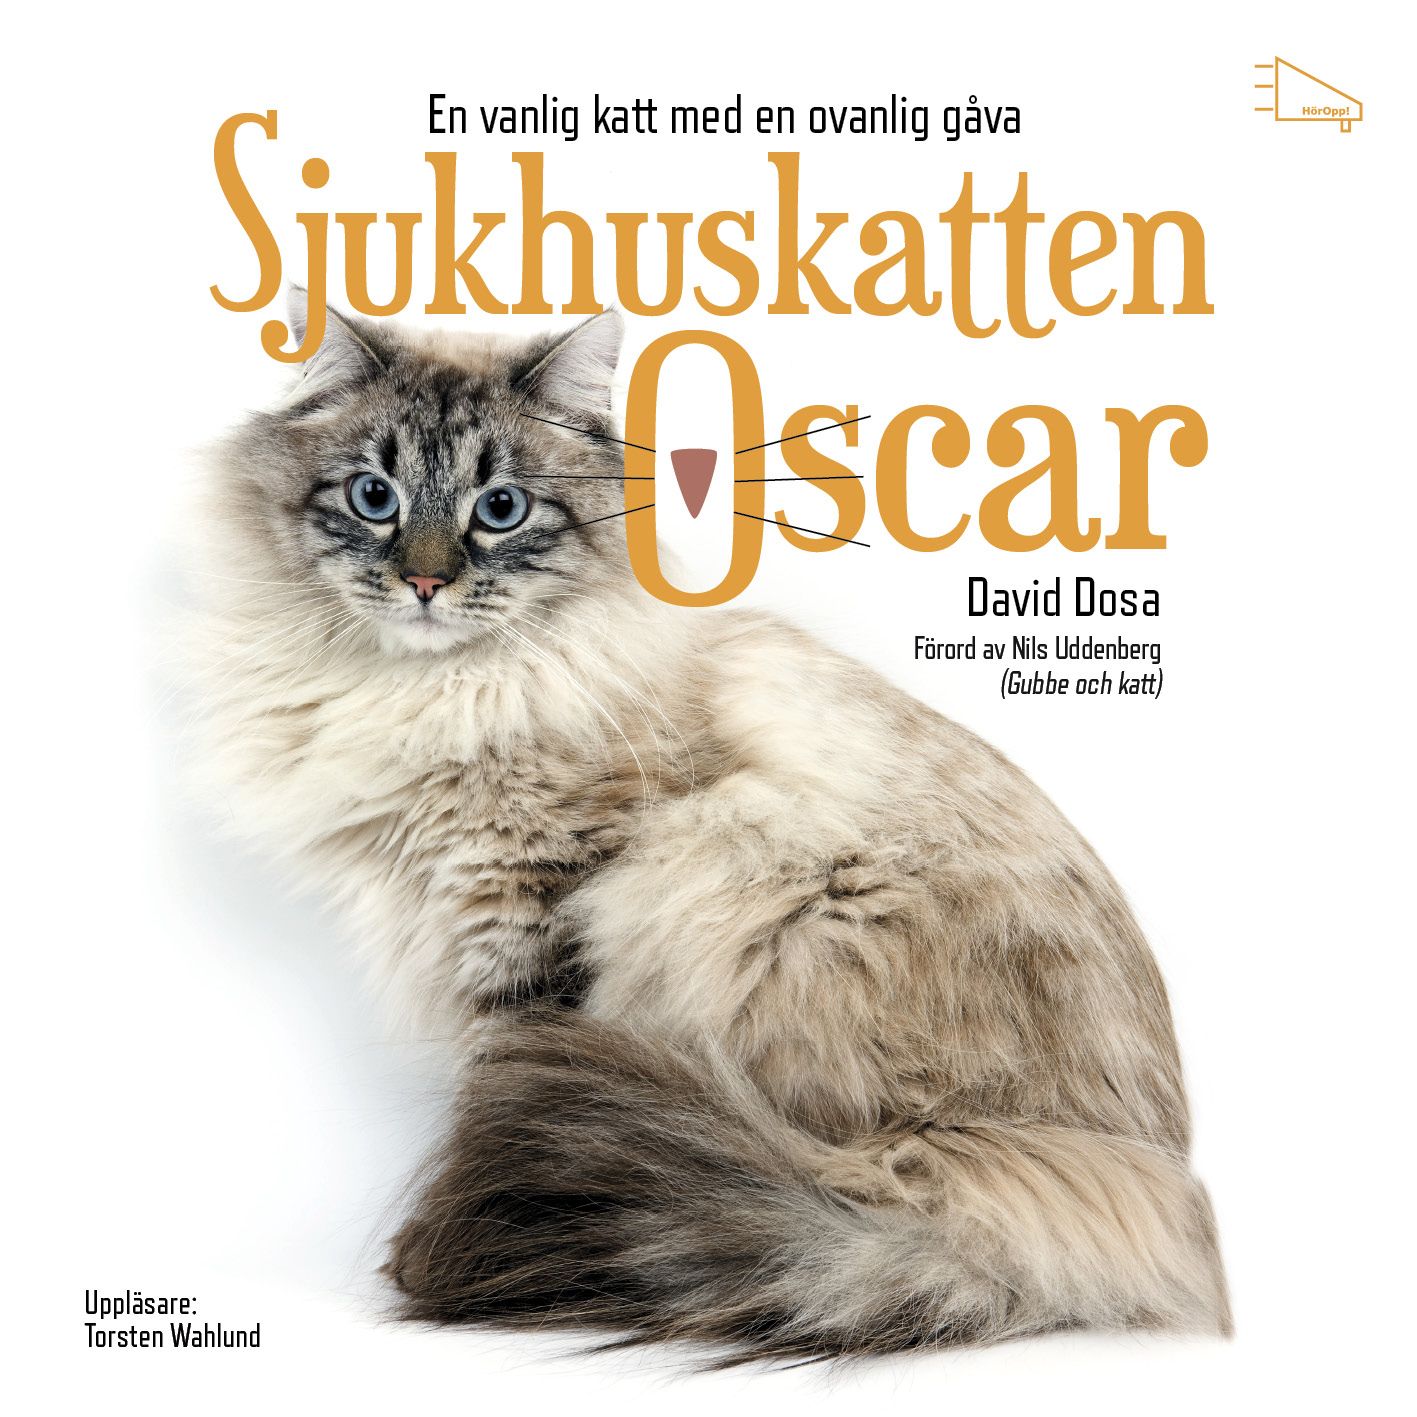 Sjukhuskatten Oscar : En vanlig katt med en ovanlig gåva, ljudbok av David Dosa